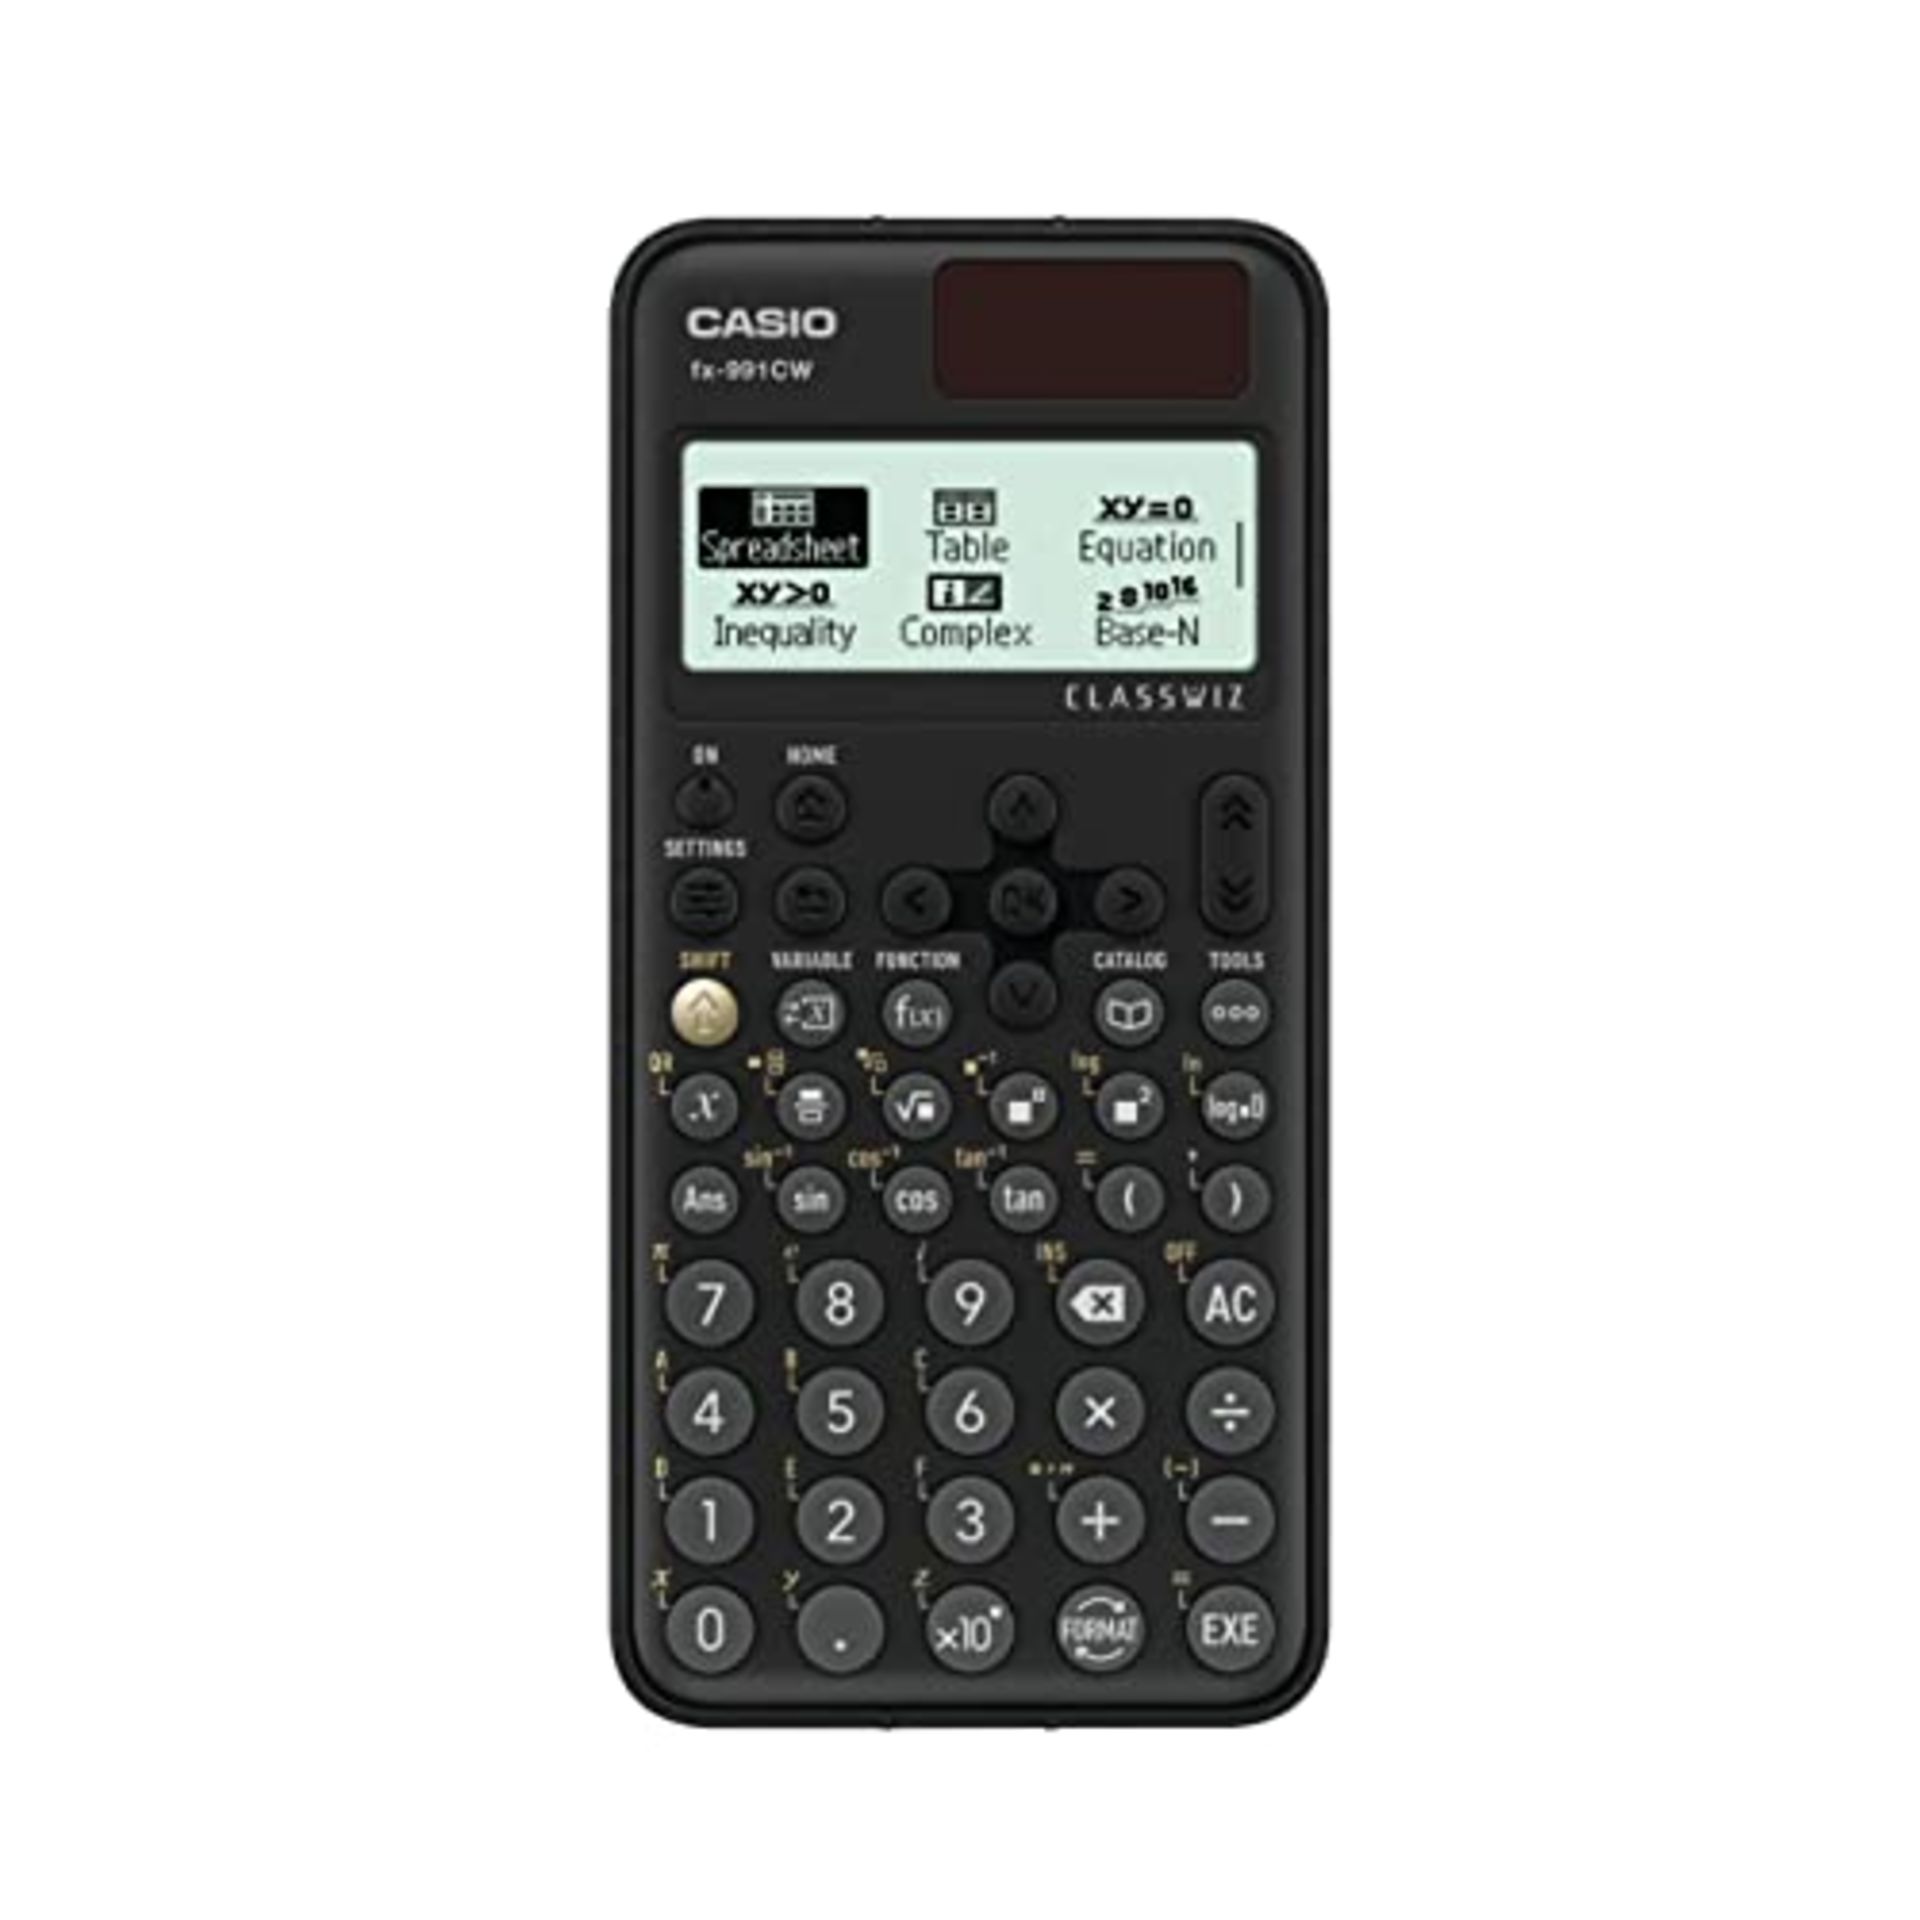 Casio FX-991CW scientific calculator (UK version)